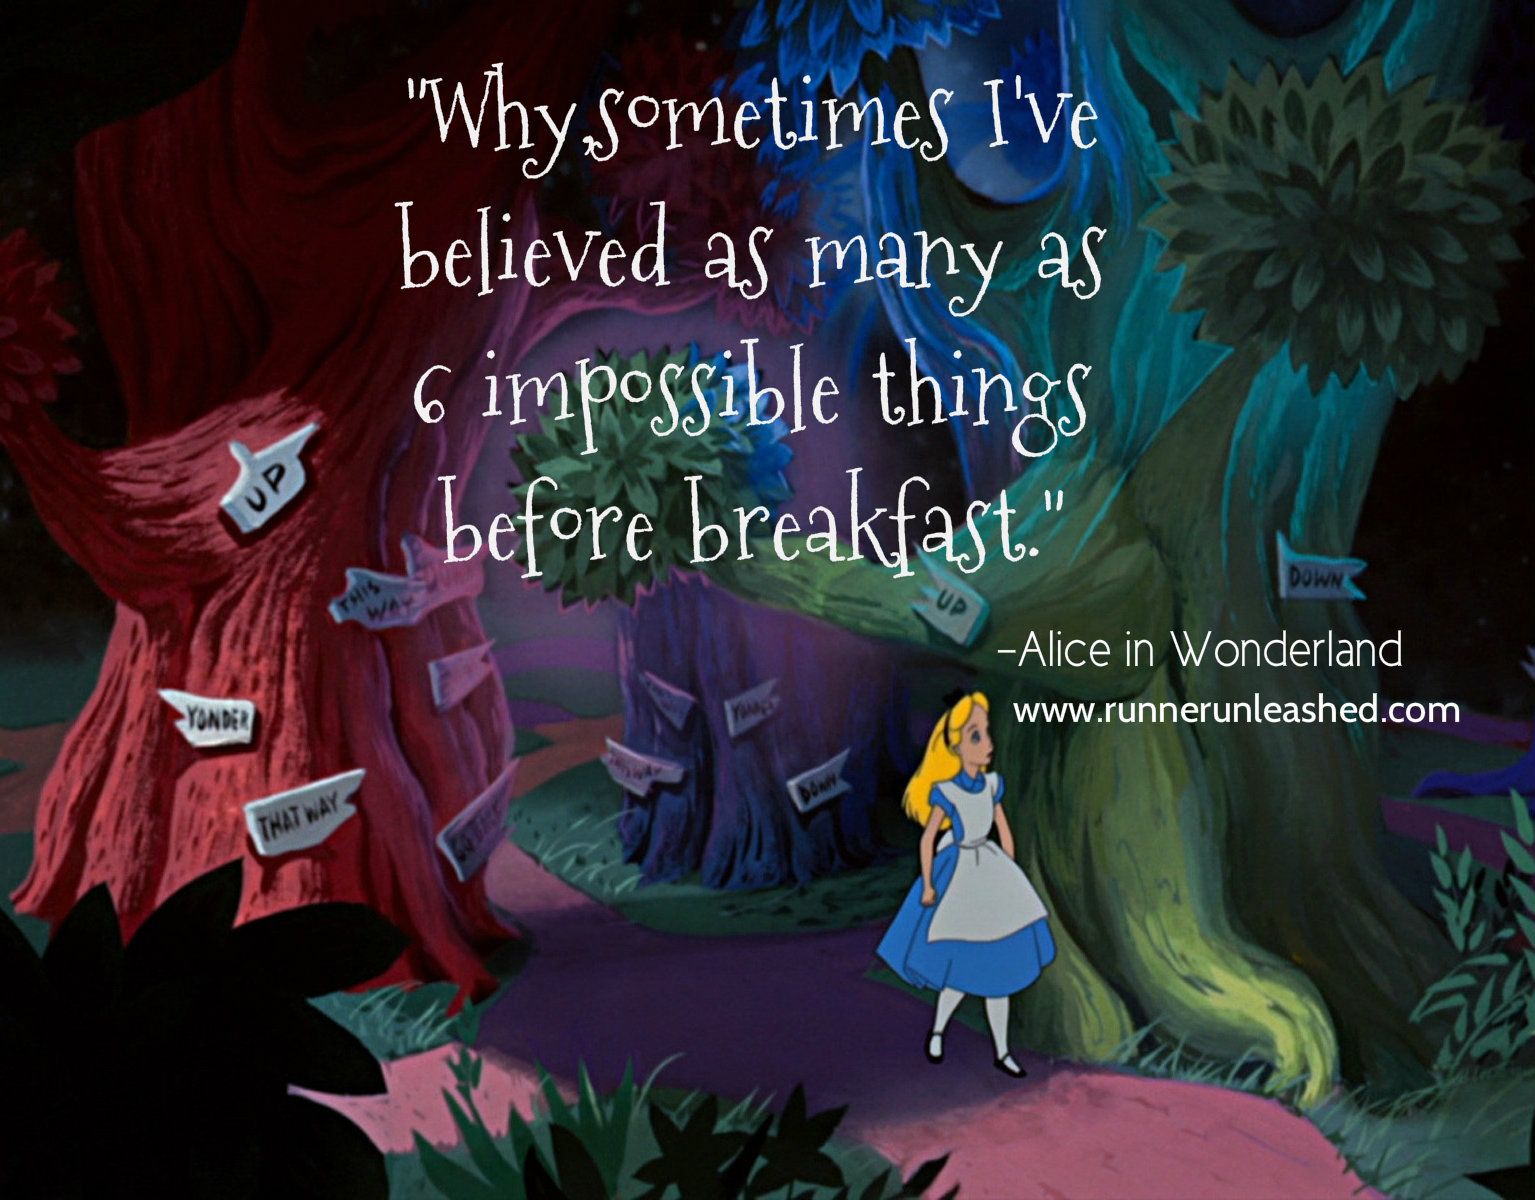 Алиса в стране чудес 10 глава